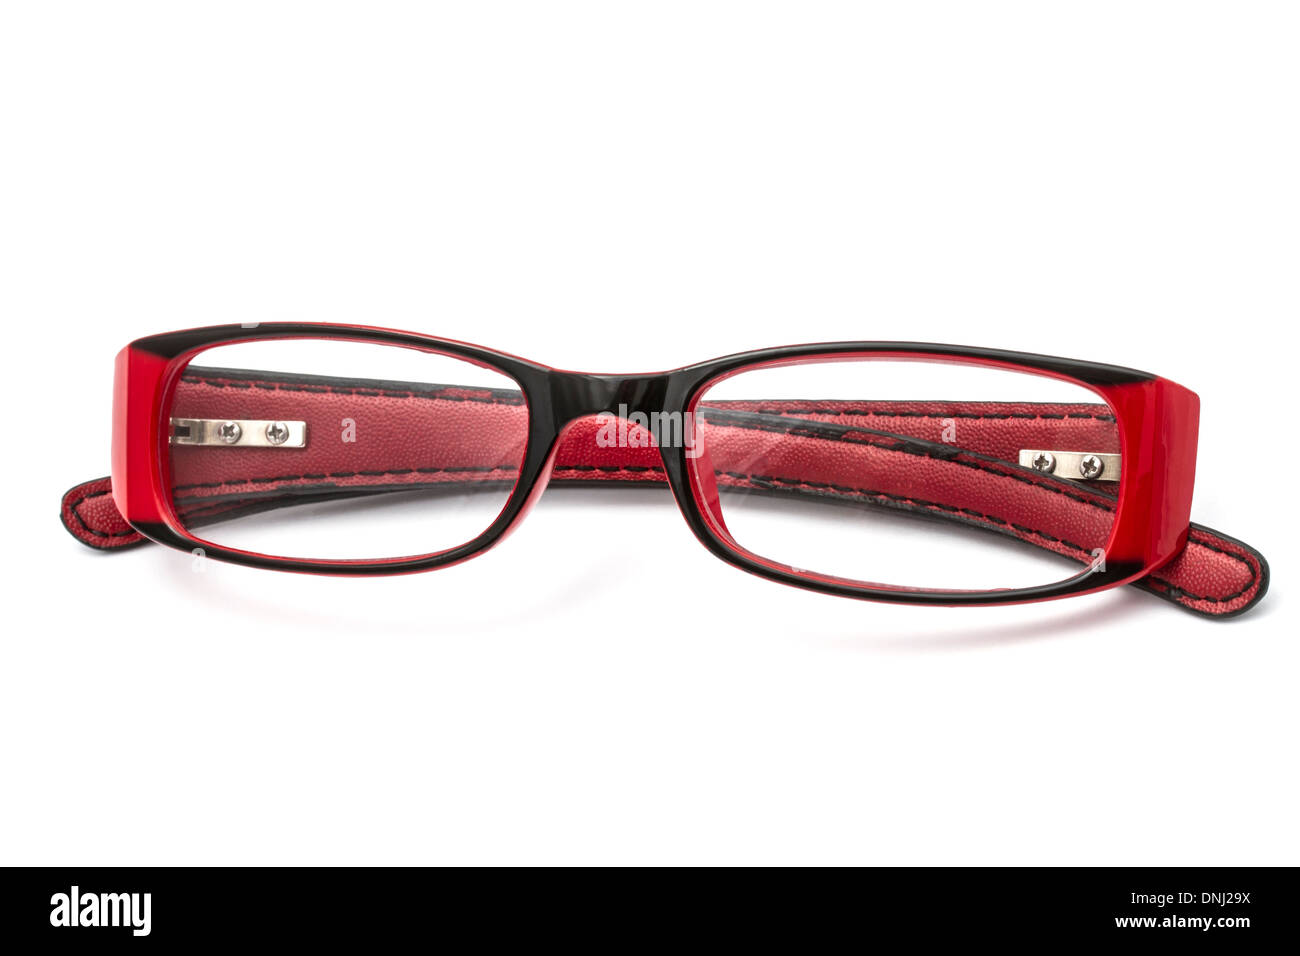 Rote Brille isoliert auf weißem Hintergrund Stockfotografie - Alamy